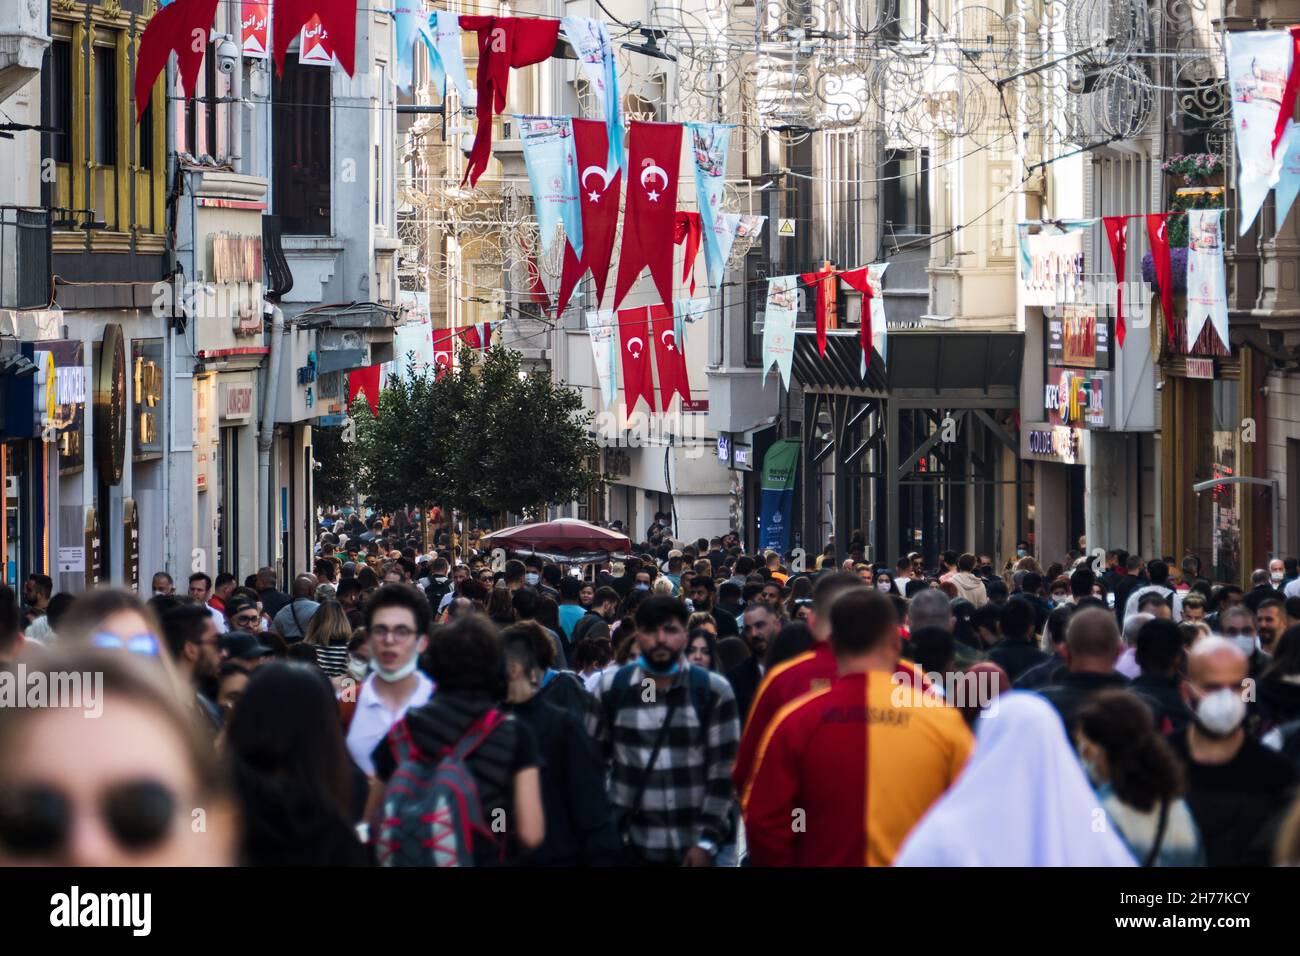 Pas de distance sociale dans la rue animée d'Istiklal pendant la pandémie de coronavirus.Istanbul, Turquie.Novembre 2021 Banque D'Images